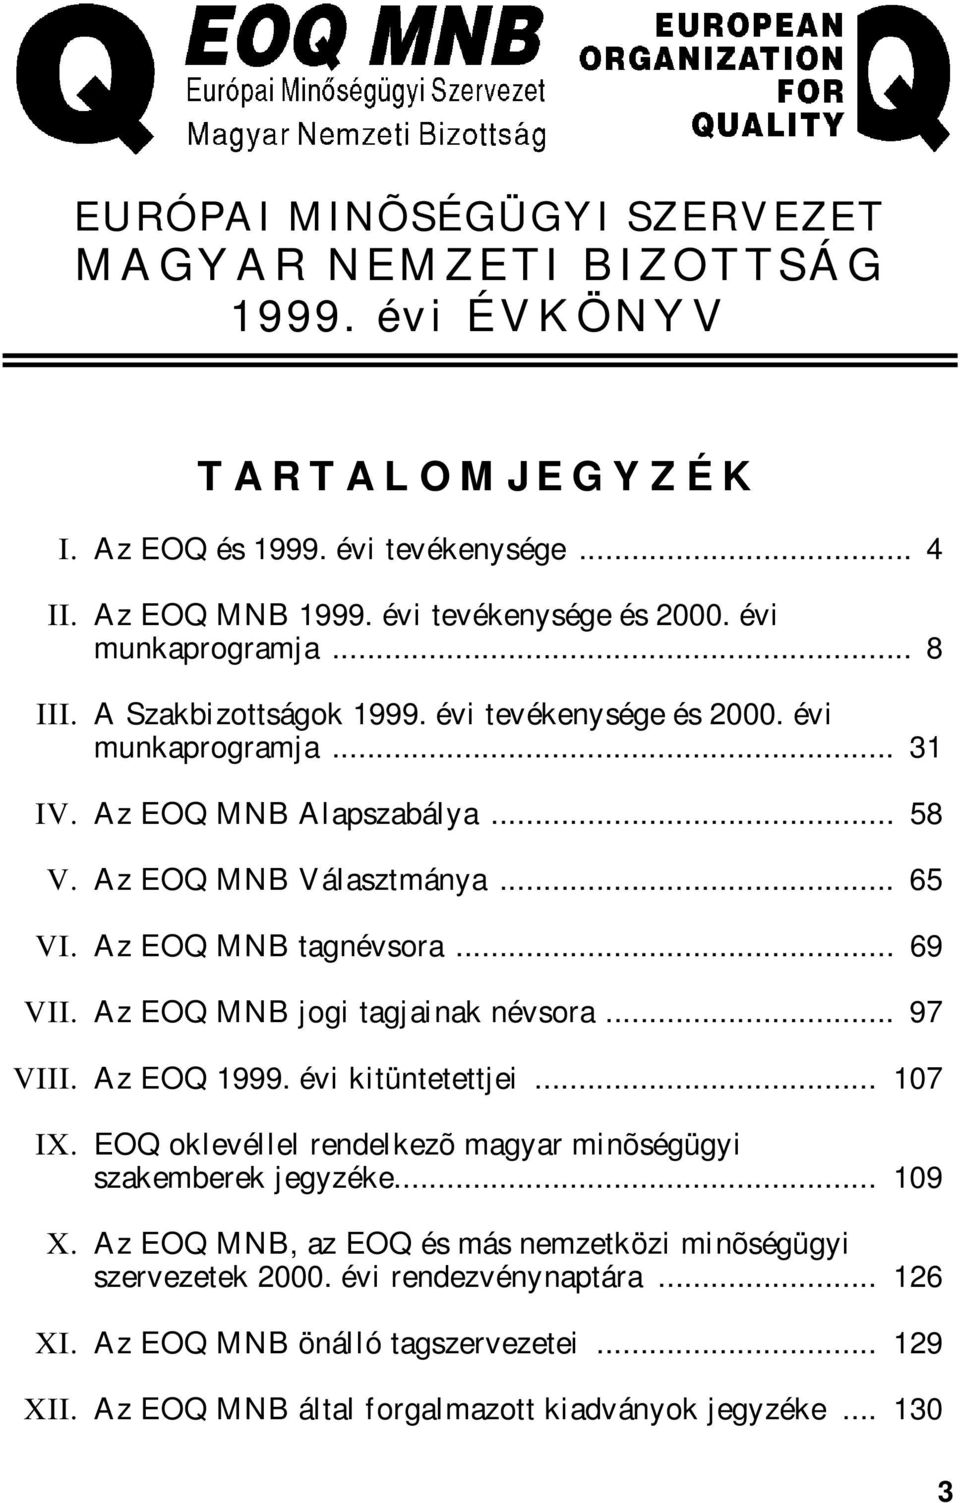 Az EOQ MNB tagnévsora... 69 VII. Az EOQ MNB jogi tagjainak névsora... 97 VIII. Az EOQ 1999. évi kitüntetettjei... 107 IX. EOQ oklevéllel rendelkezõ magyar minõségügyi szakemberek jegyzéke.